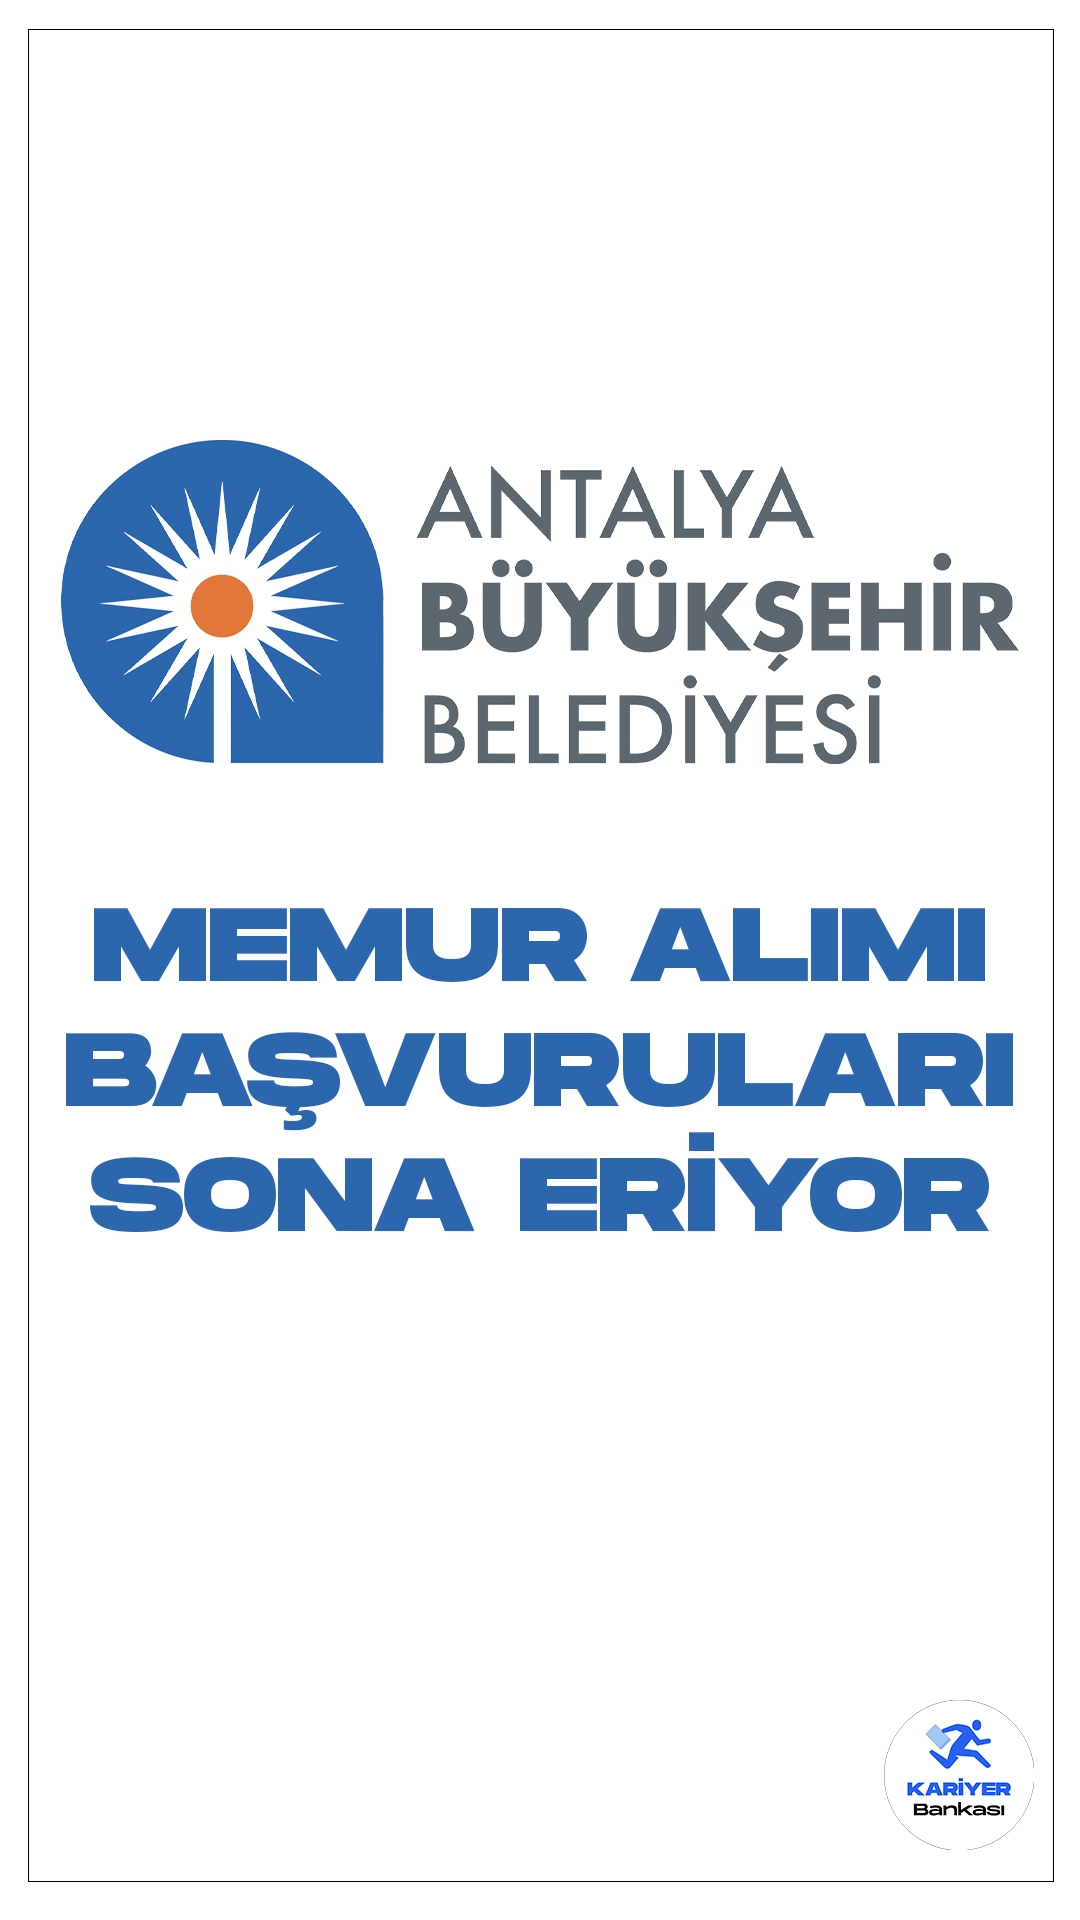 Antalya Büyükşehir Belediyesi 73 Memur Alımı Başvuruları Sona Eriyor.İlgili alım duyurusuna göre, Antalya Büyükşehir Belediyesine KPSS'den 60 puan alan adaylar arasından memur alımı yapılacak.Başvurular yarın(16 Şubat) sona erecek. Başvuru yapacak adayların şartları taşıması gerekmektedir. 